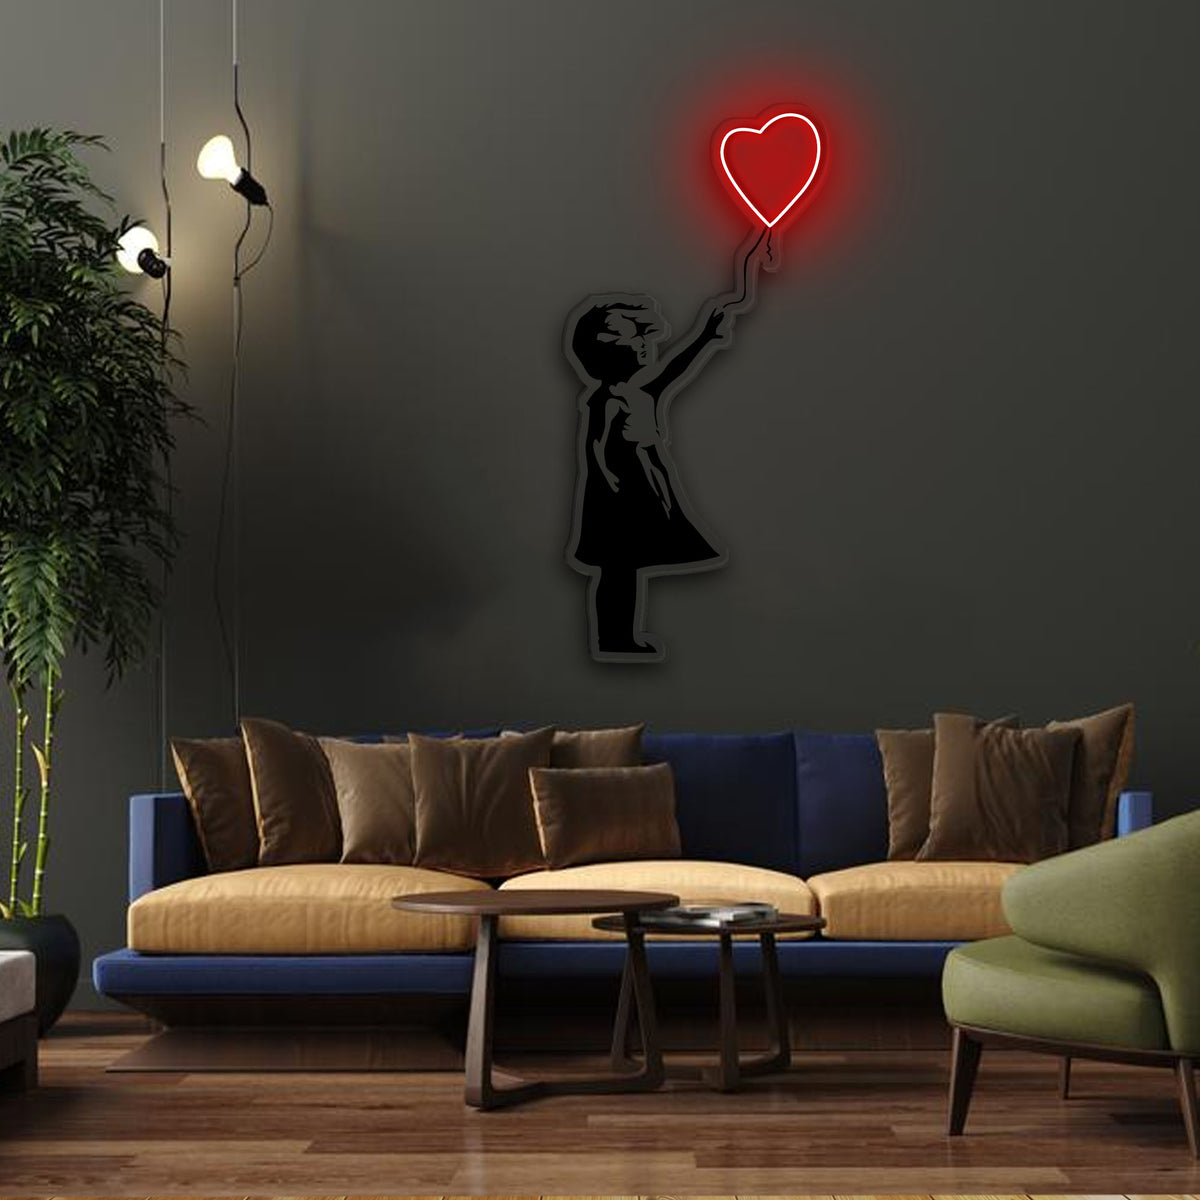 Custom Neon Sign LED  Design & Make Your Own